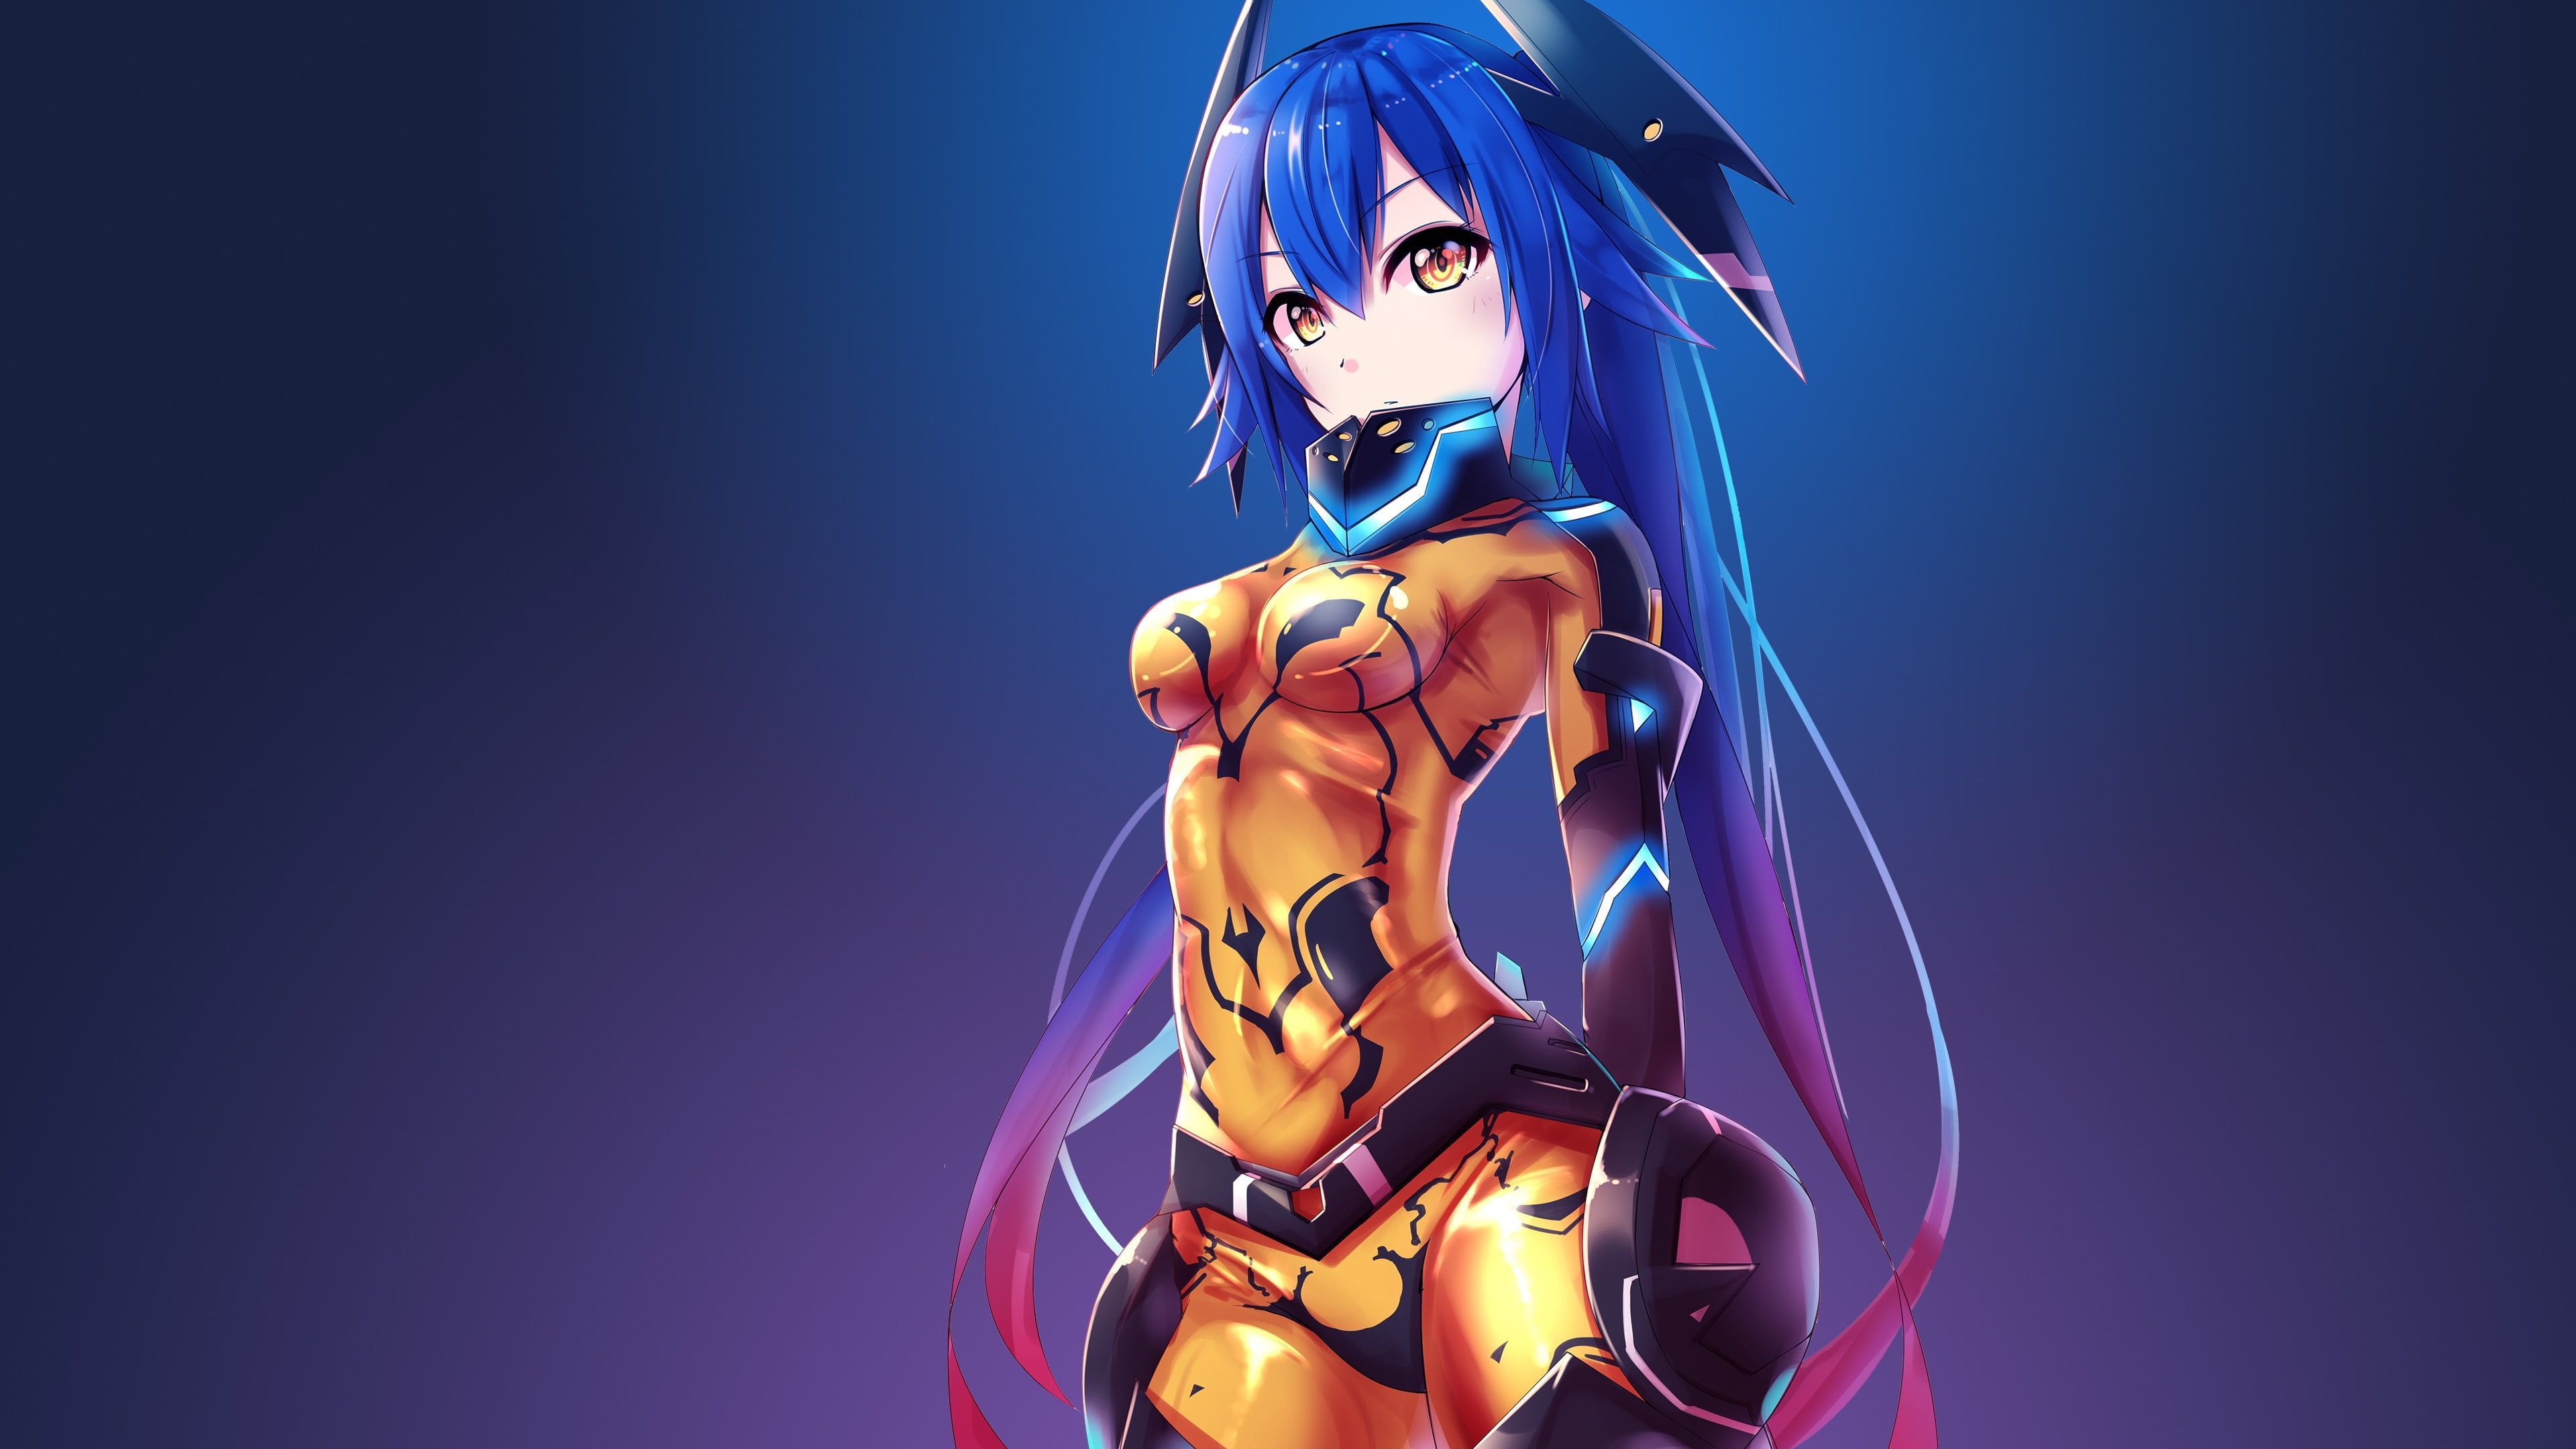 Blue Haired Female Anime Character Illustration #anime Anime Girls